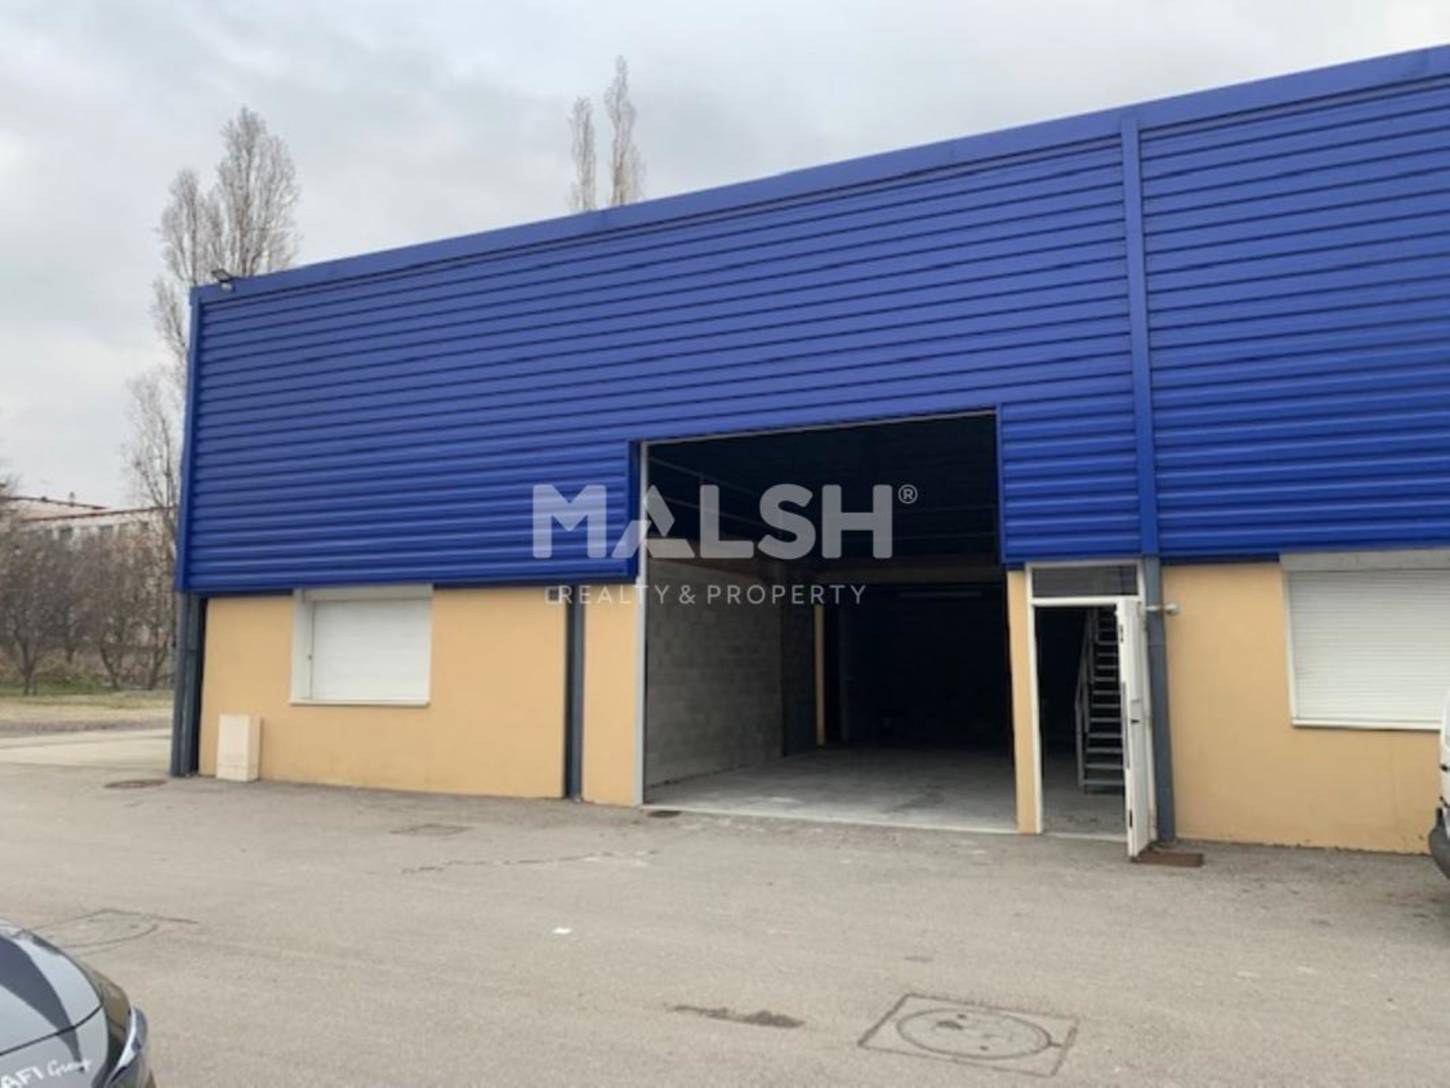 MALSH Realty & Property - Activité - Lyon Sud Ouest - Pierre-Bénite - 2